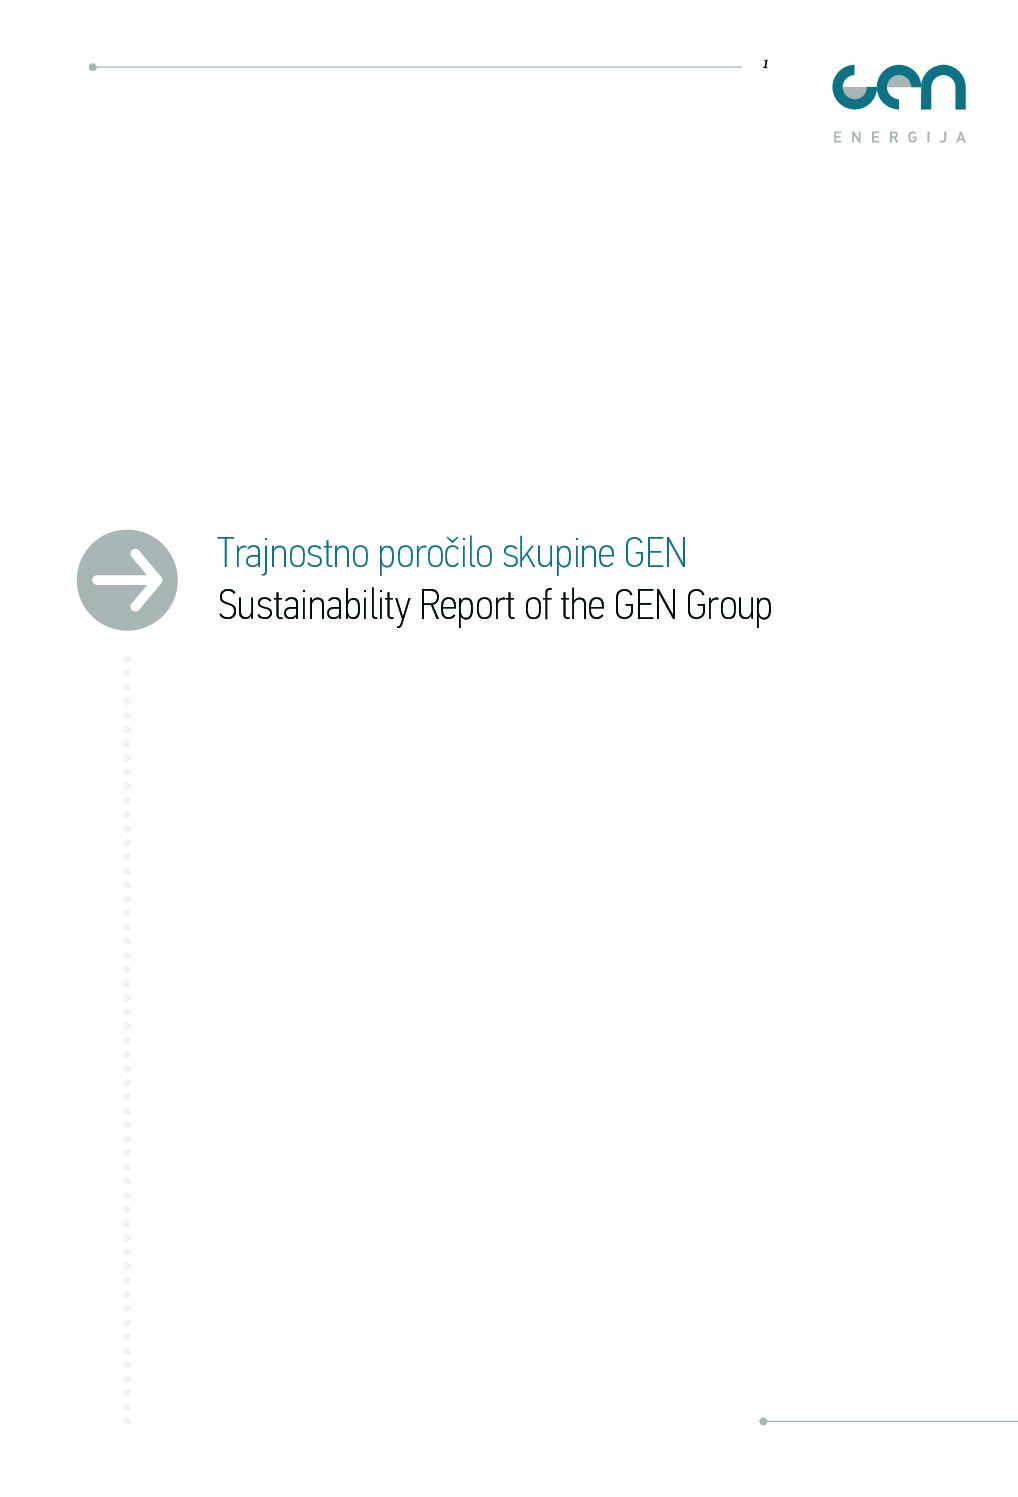 Trajnostno porocilo skupine GEN 2009 pdf